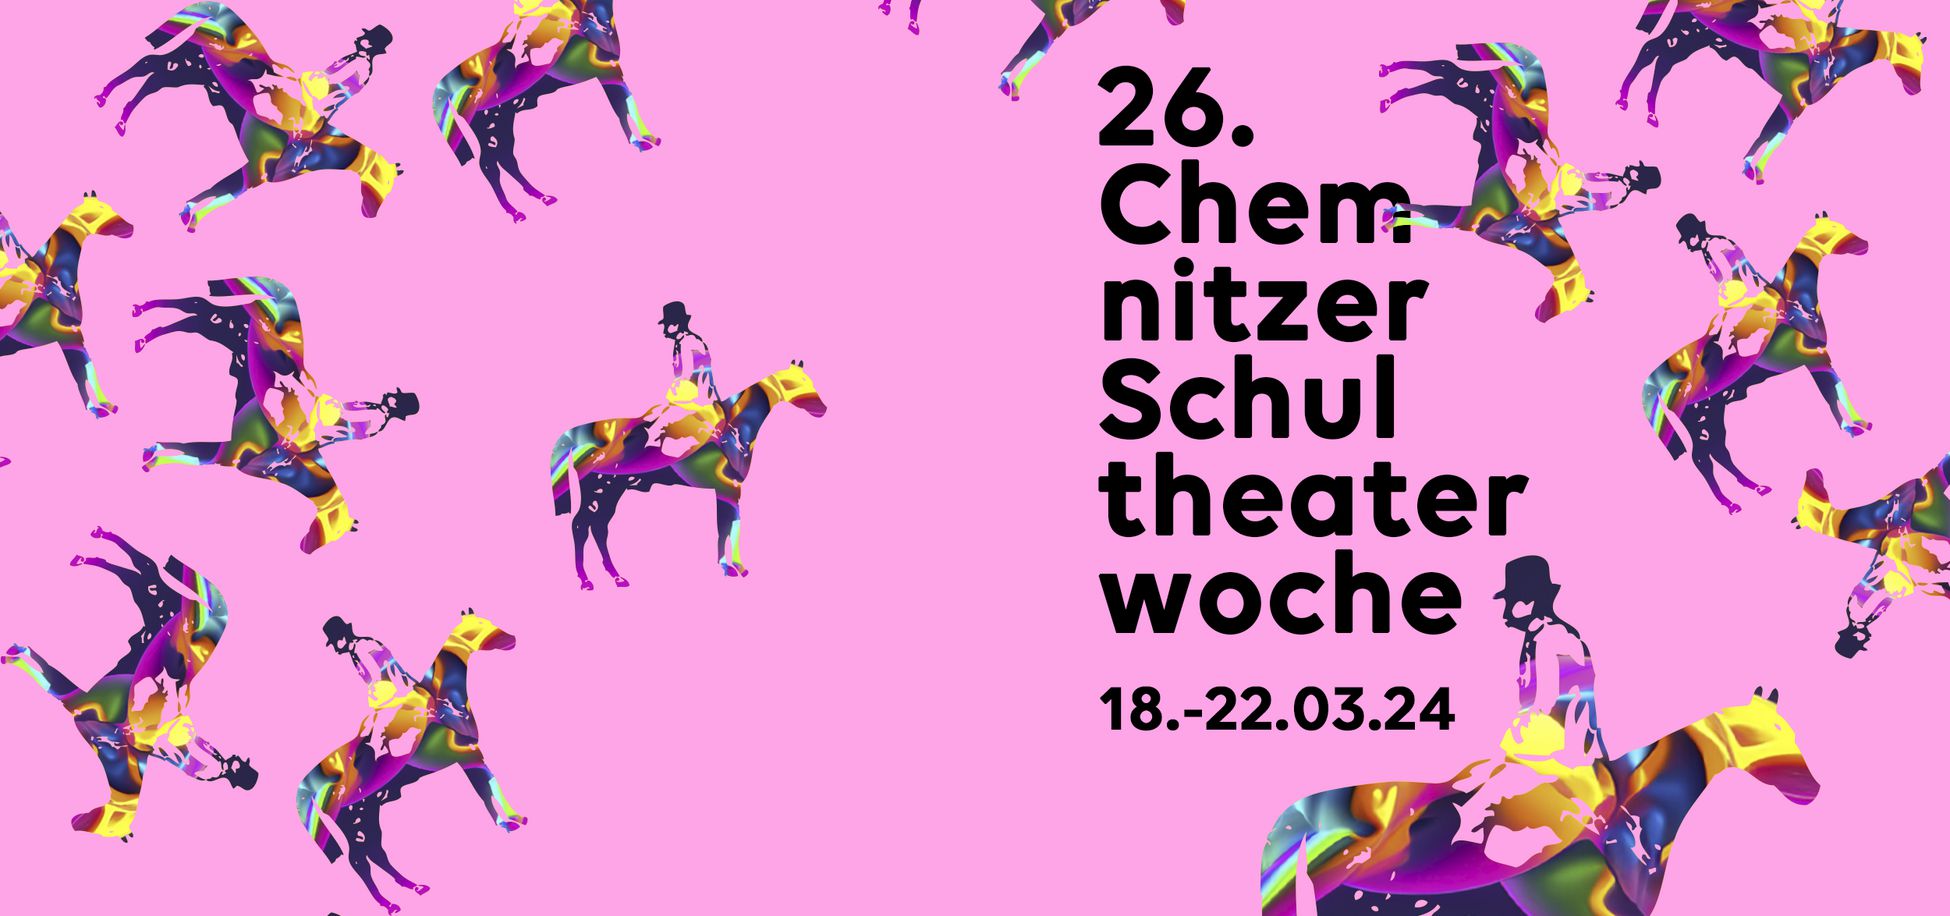 Grafik zur 26. Chemnitzer Schultheaterwoche